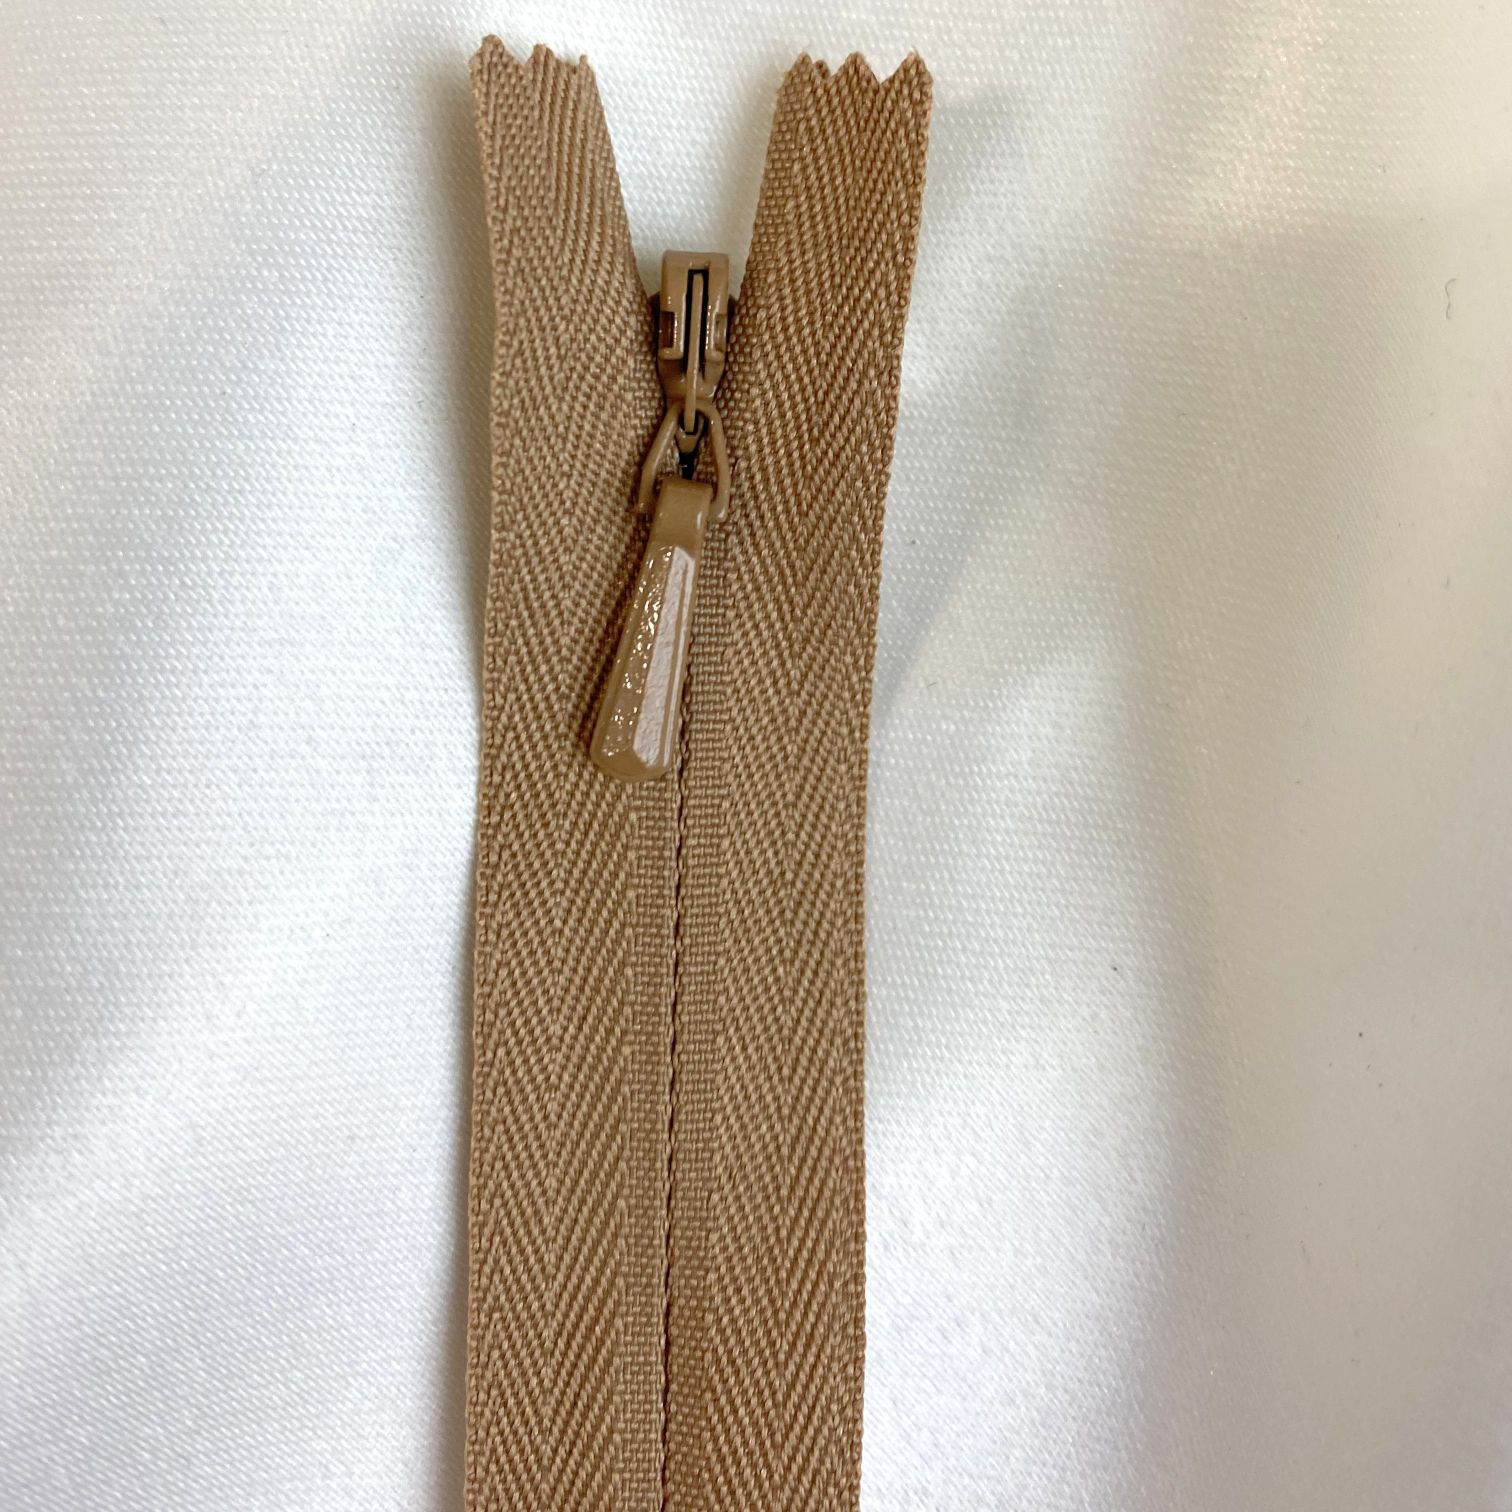 Invisible Zipper -18 inch